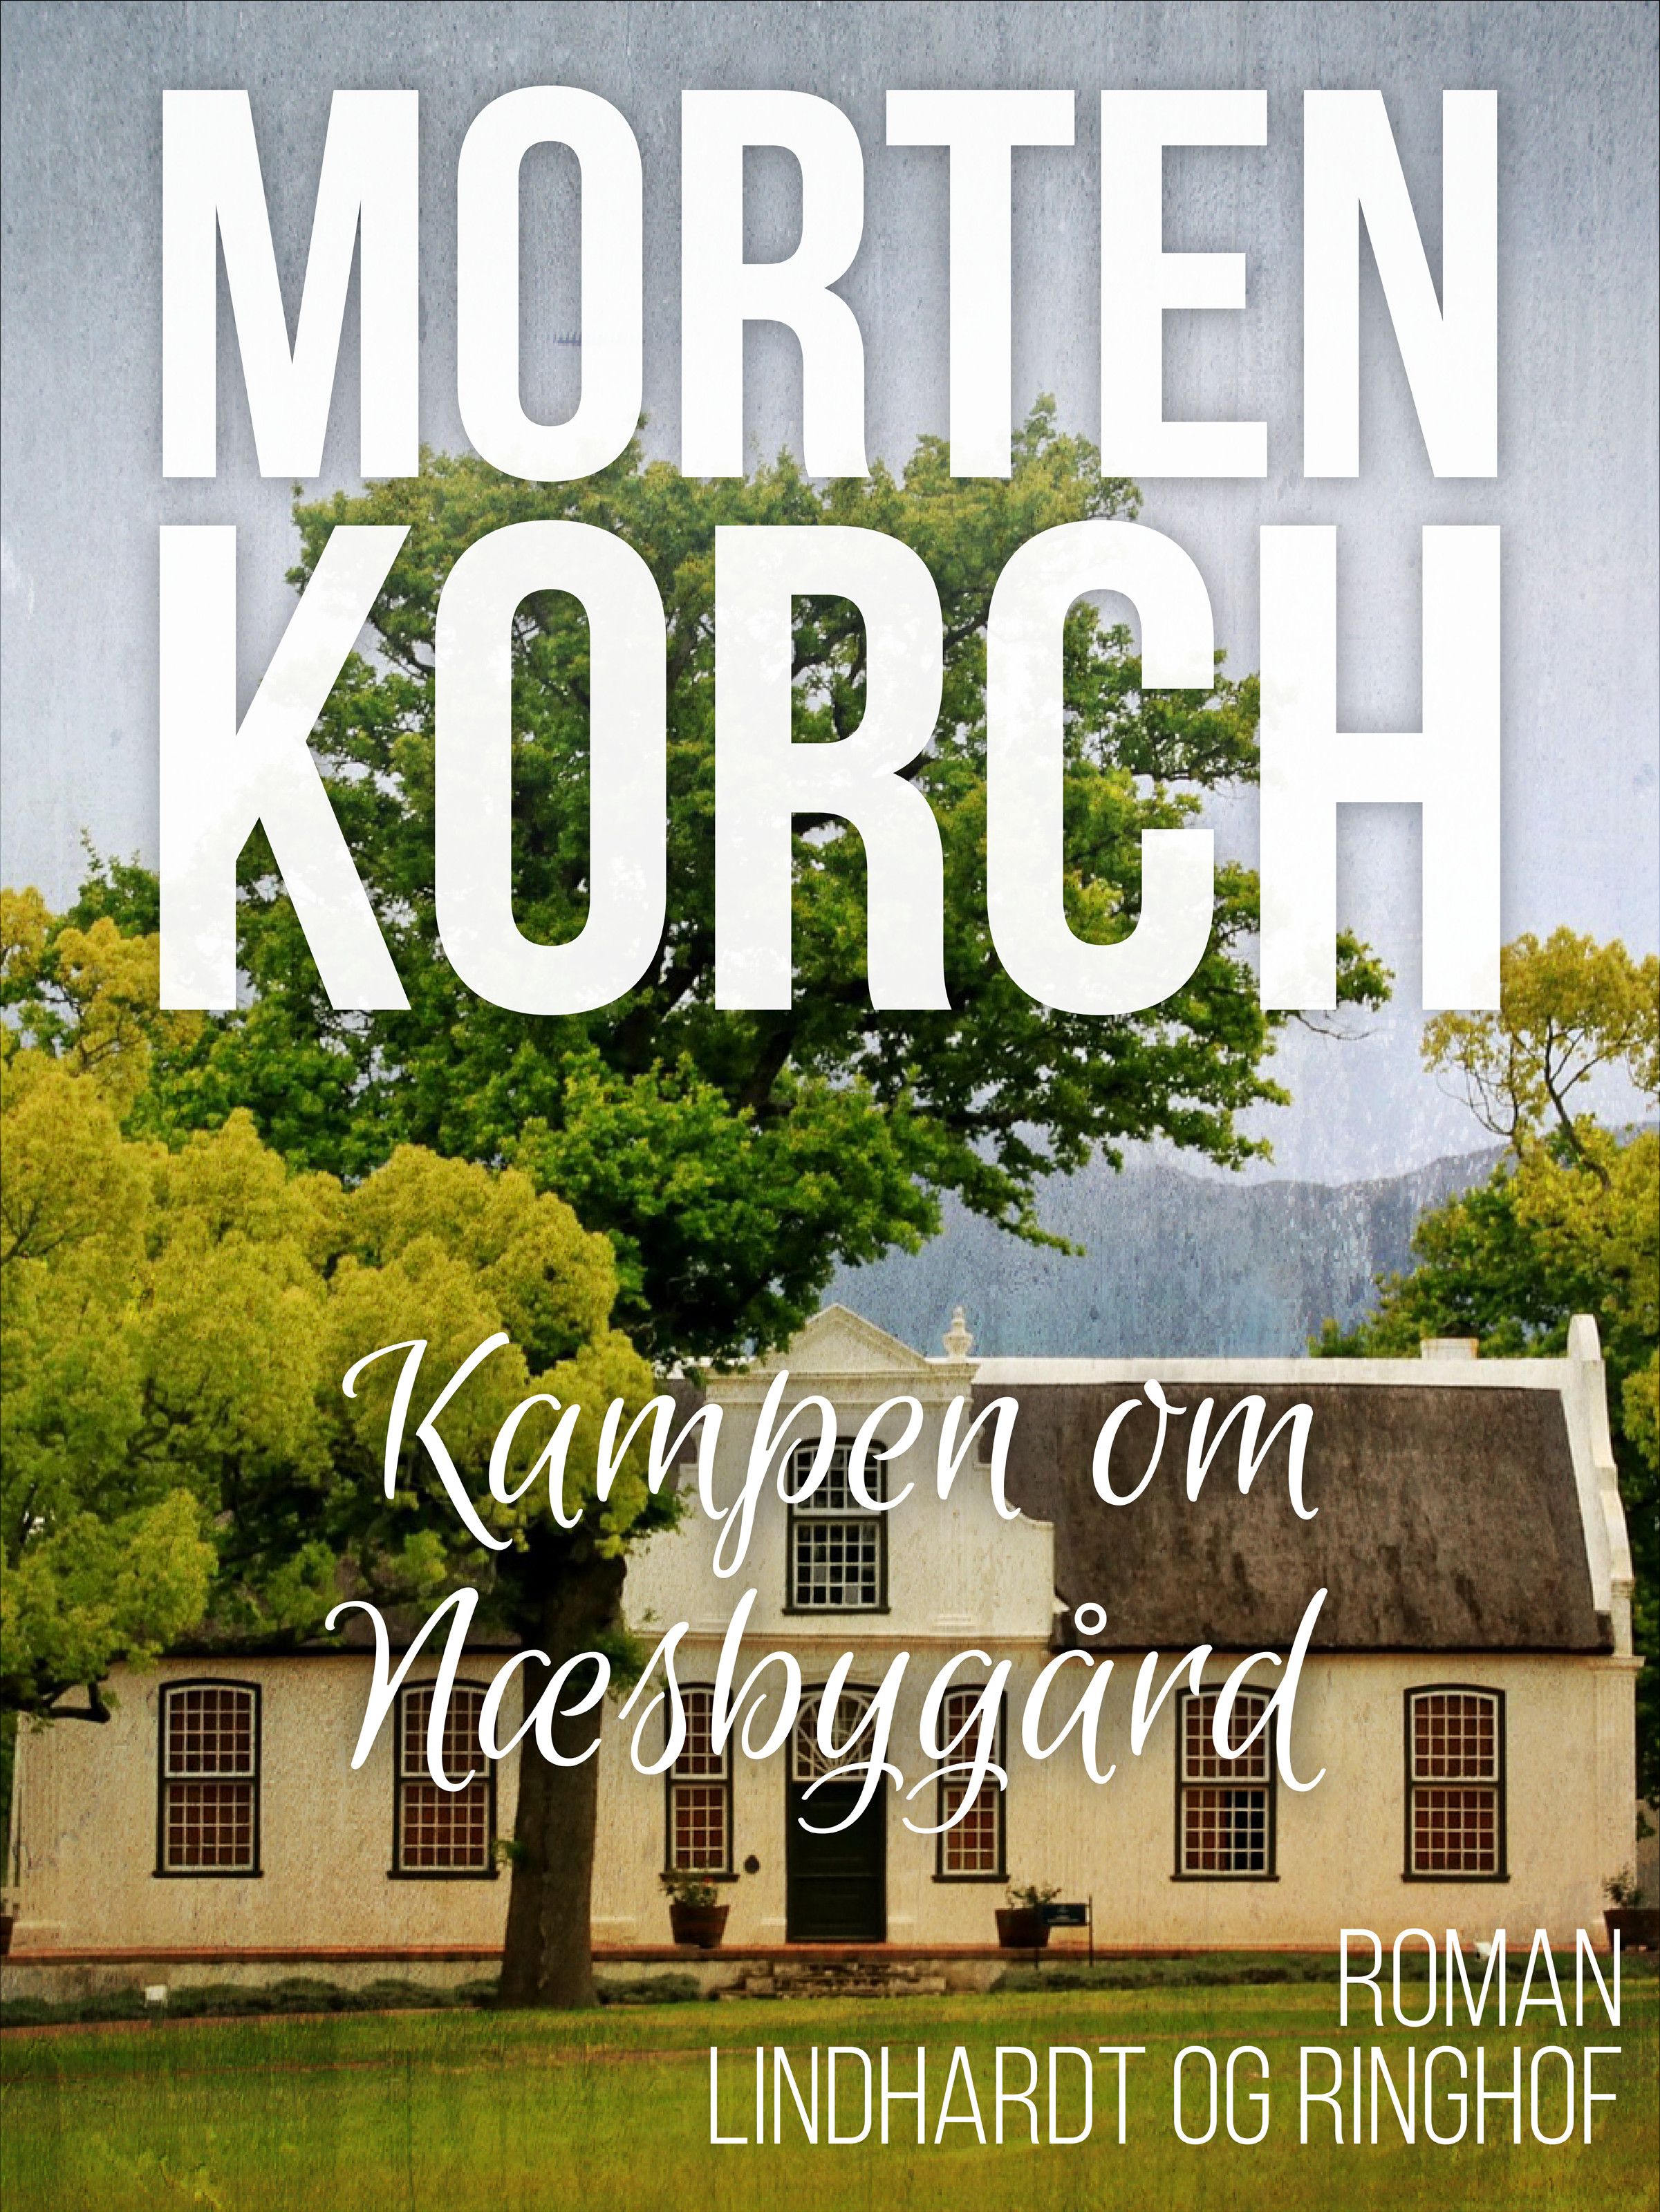 Kampen om Næsbygård, lydbog af Morten Korch